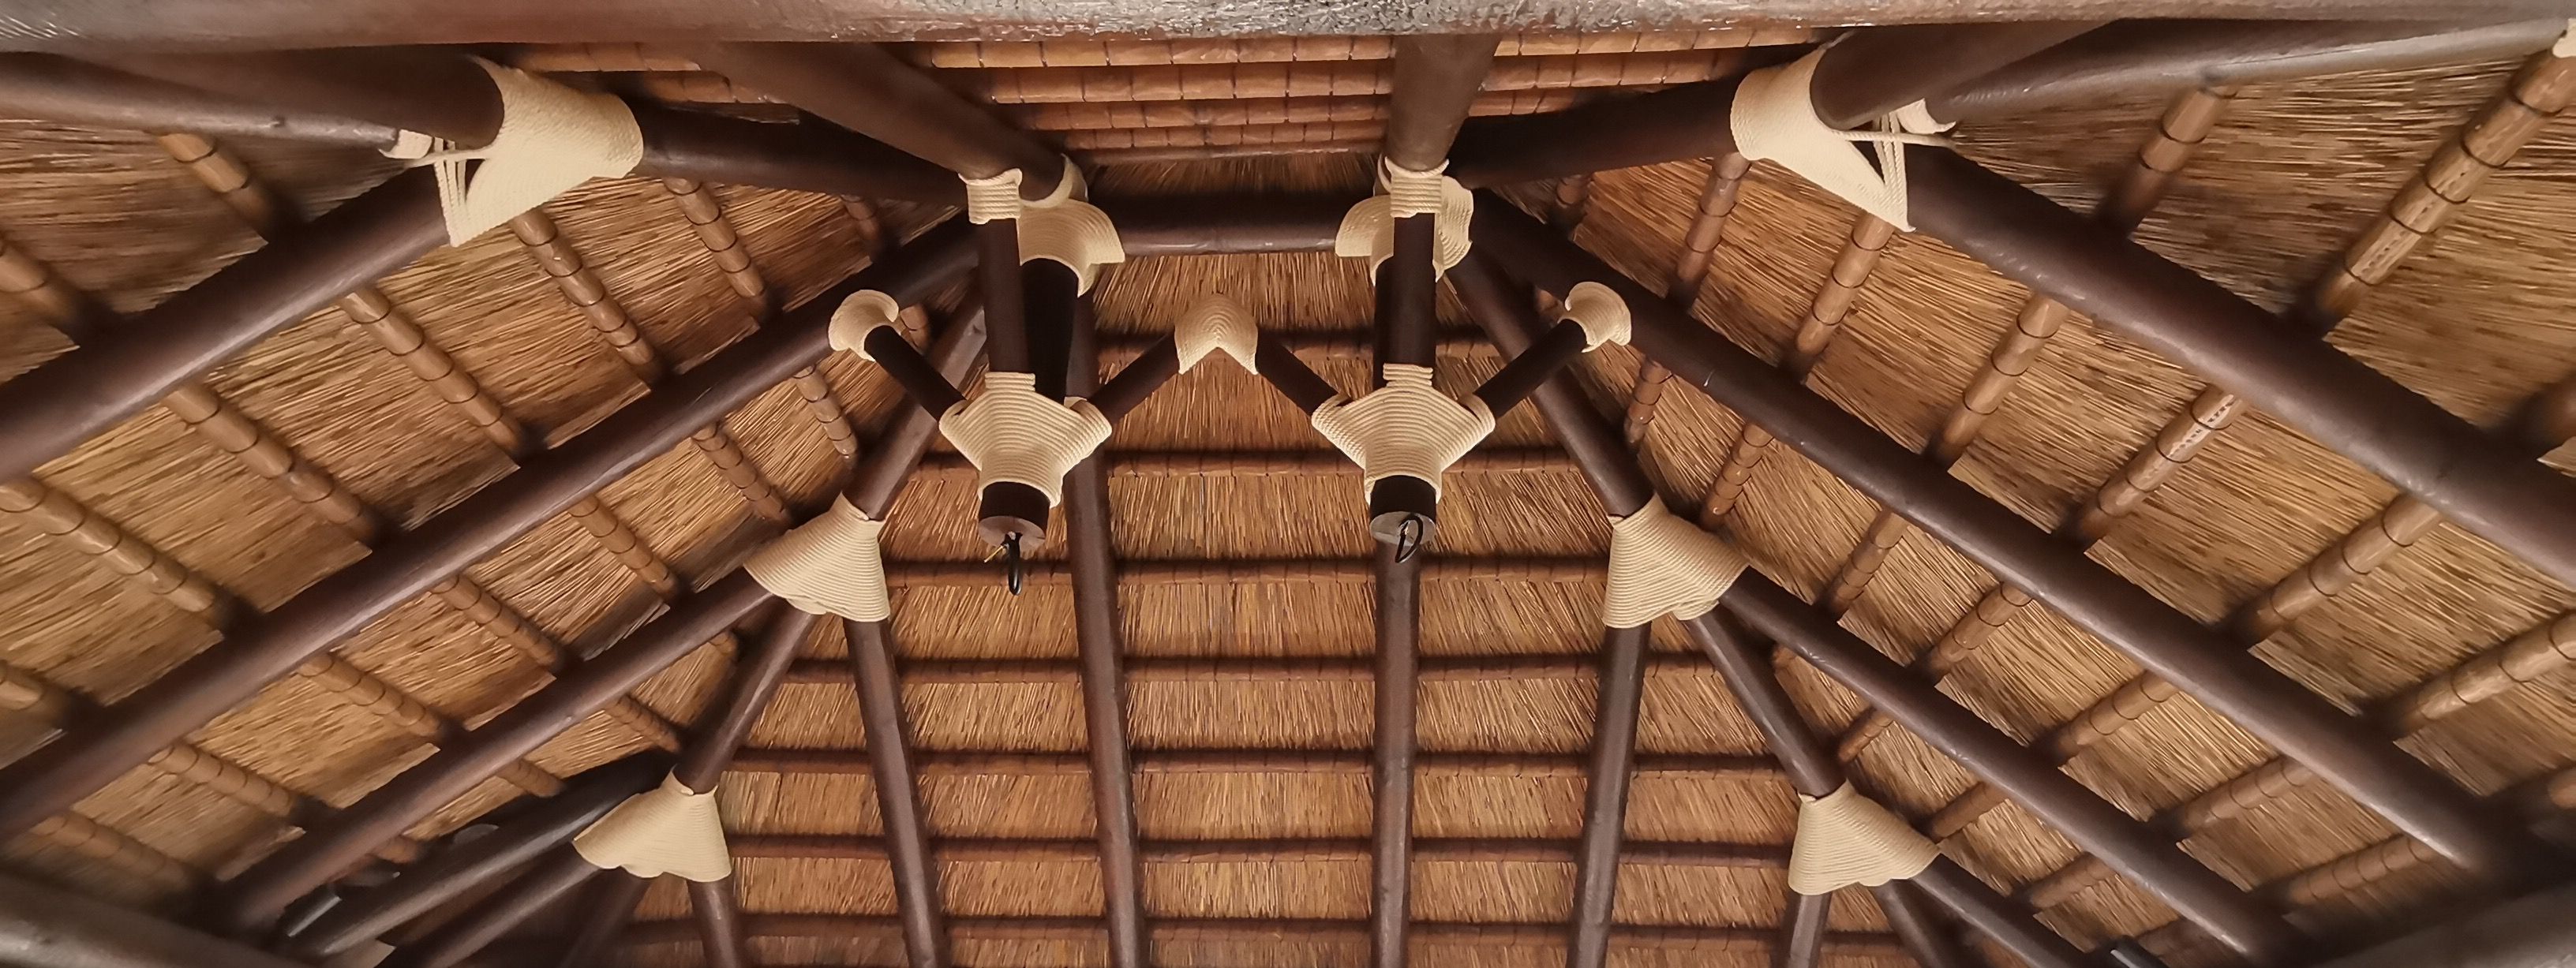 estructura de juncos y madera